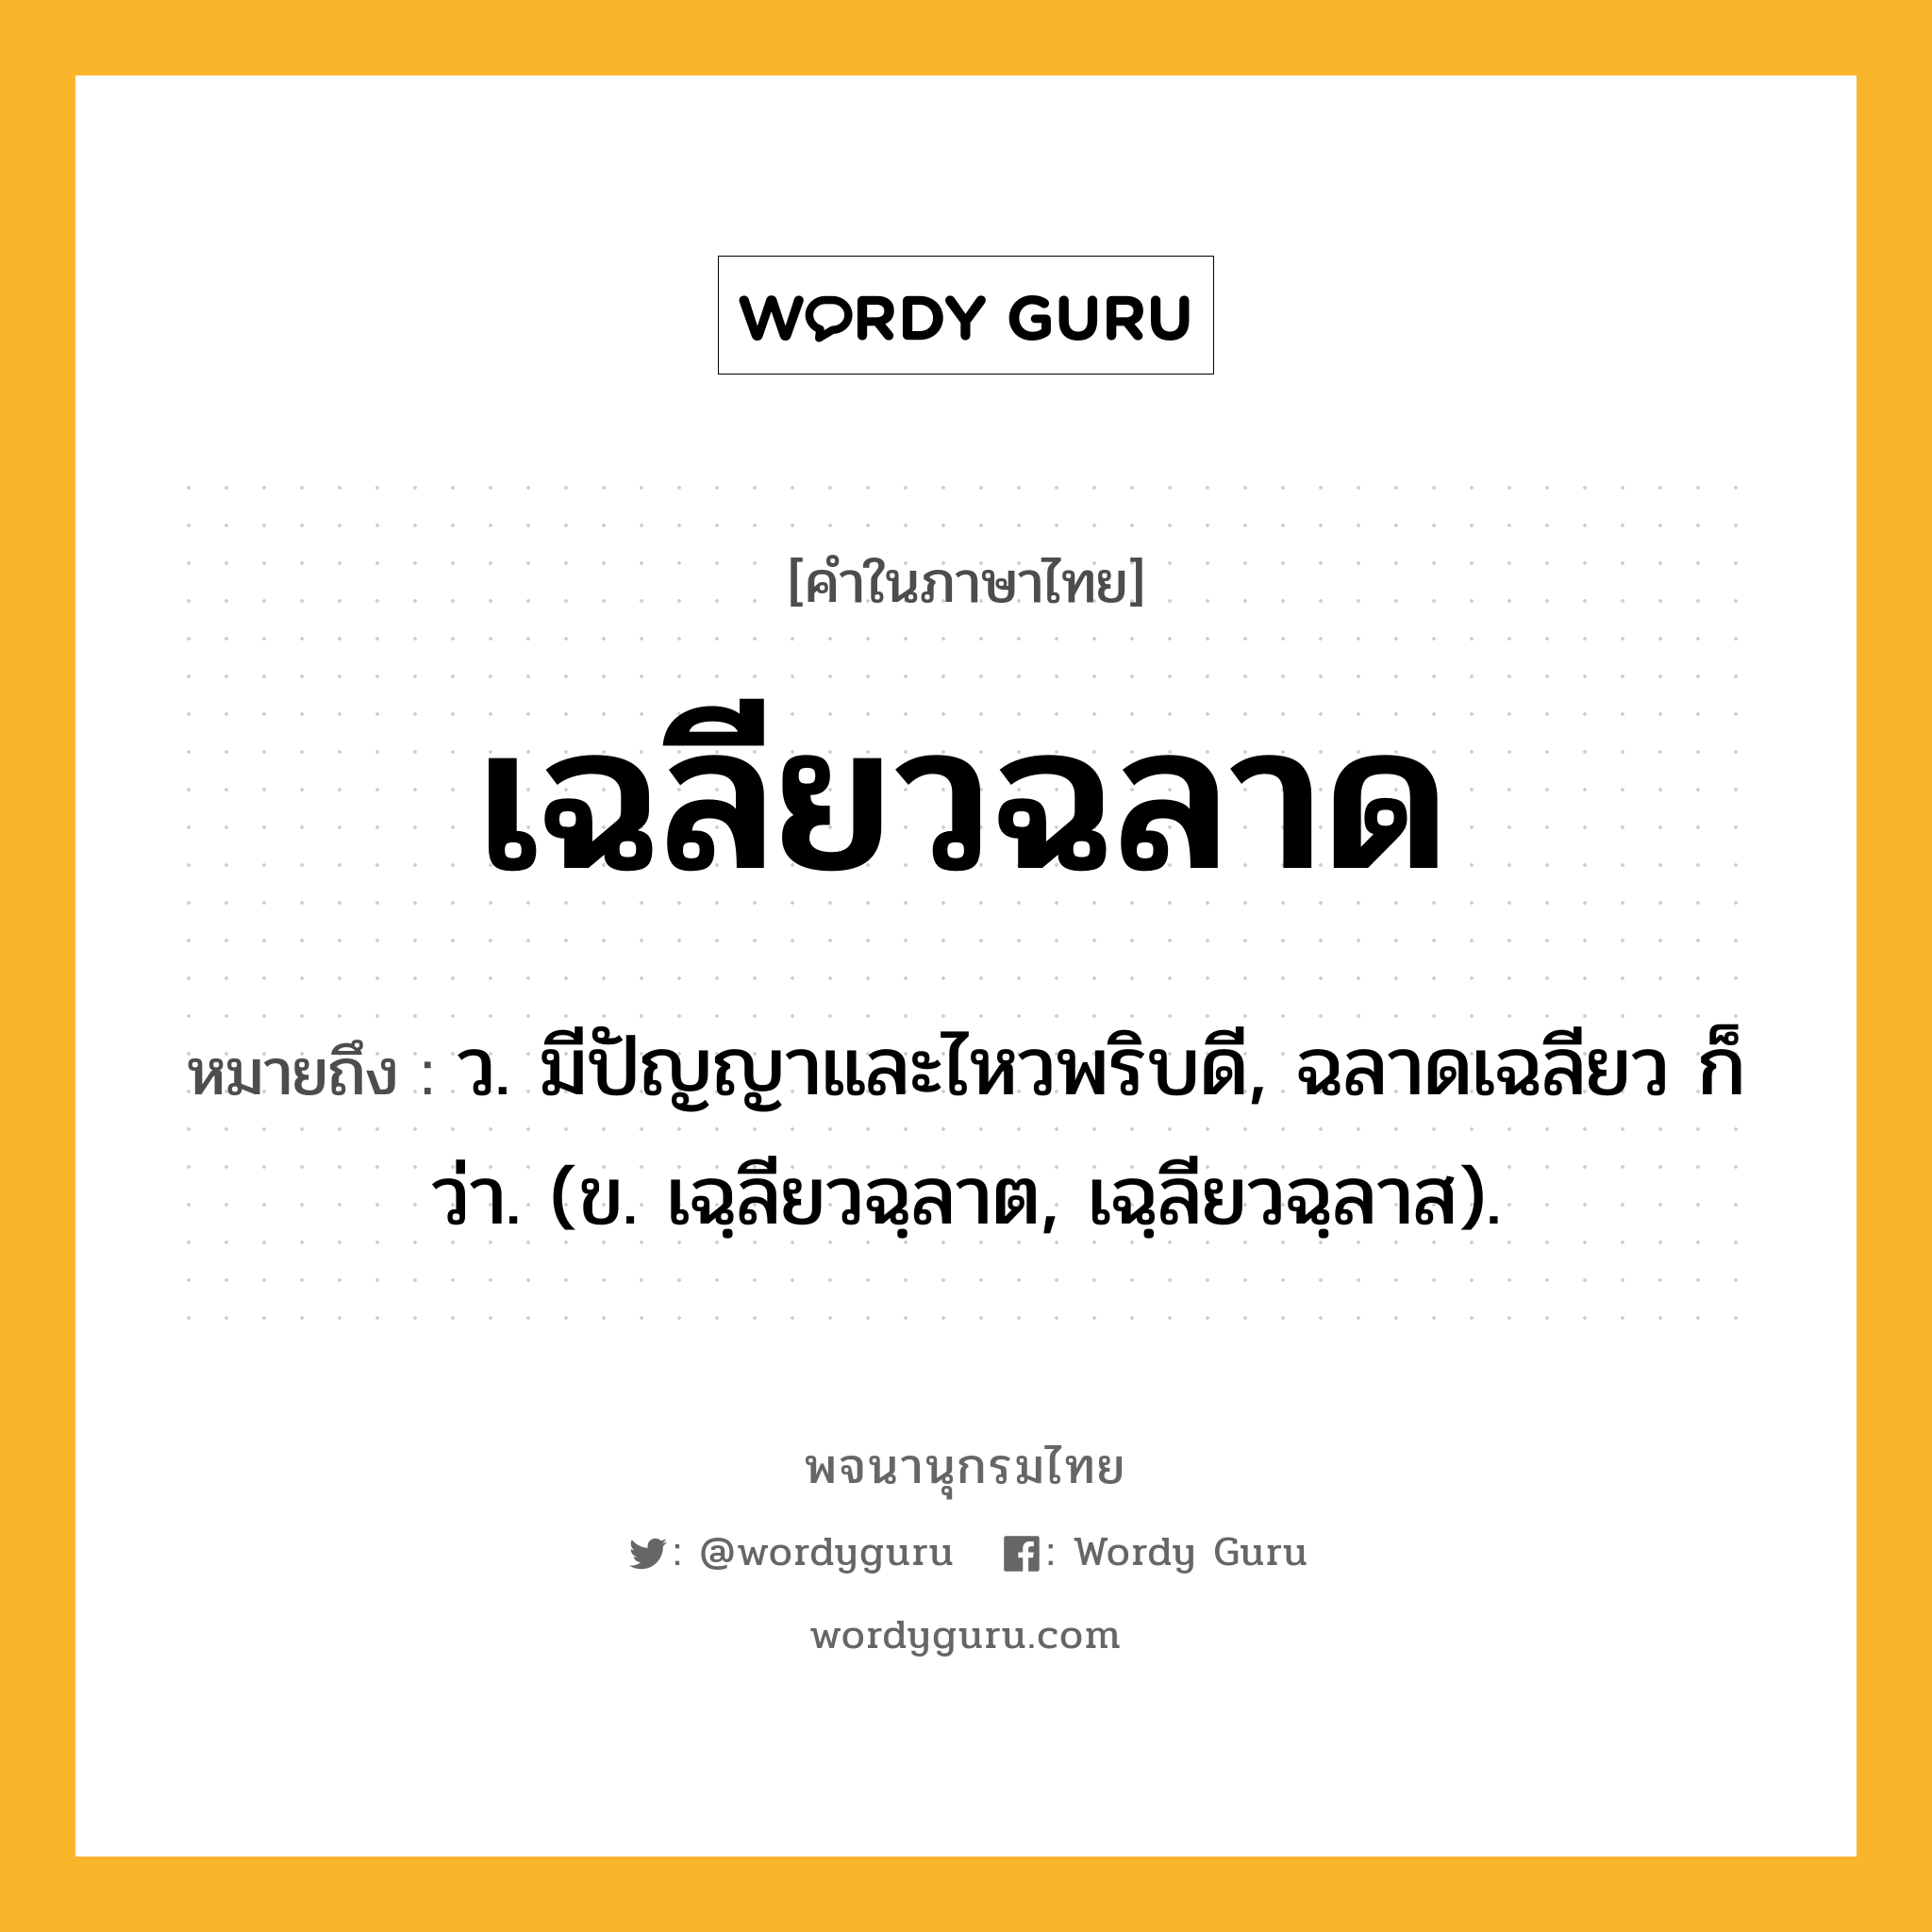 เฉลียวฉลาด หมายถึงอะไร?, คำในภาษาไทย เฉลียวฉลาด หมายถึง ว. มีปัญญาและไหวพริบดี, ฉลาดเฉลียว ก็ว่า. (ข. เฉฺลียวฉฺลาต, เฉฺลียวฉฺลาส).